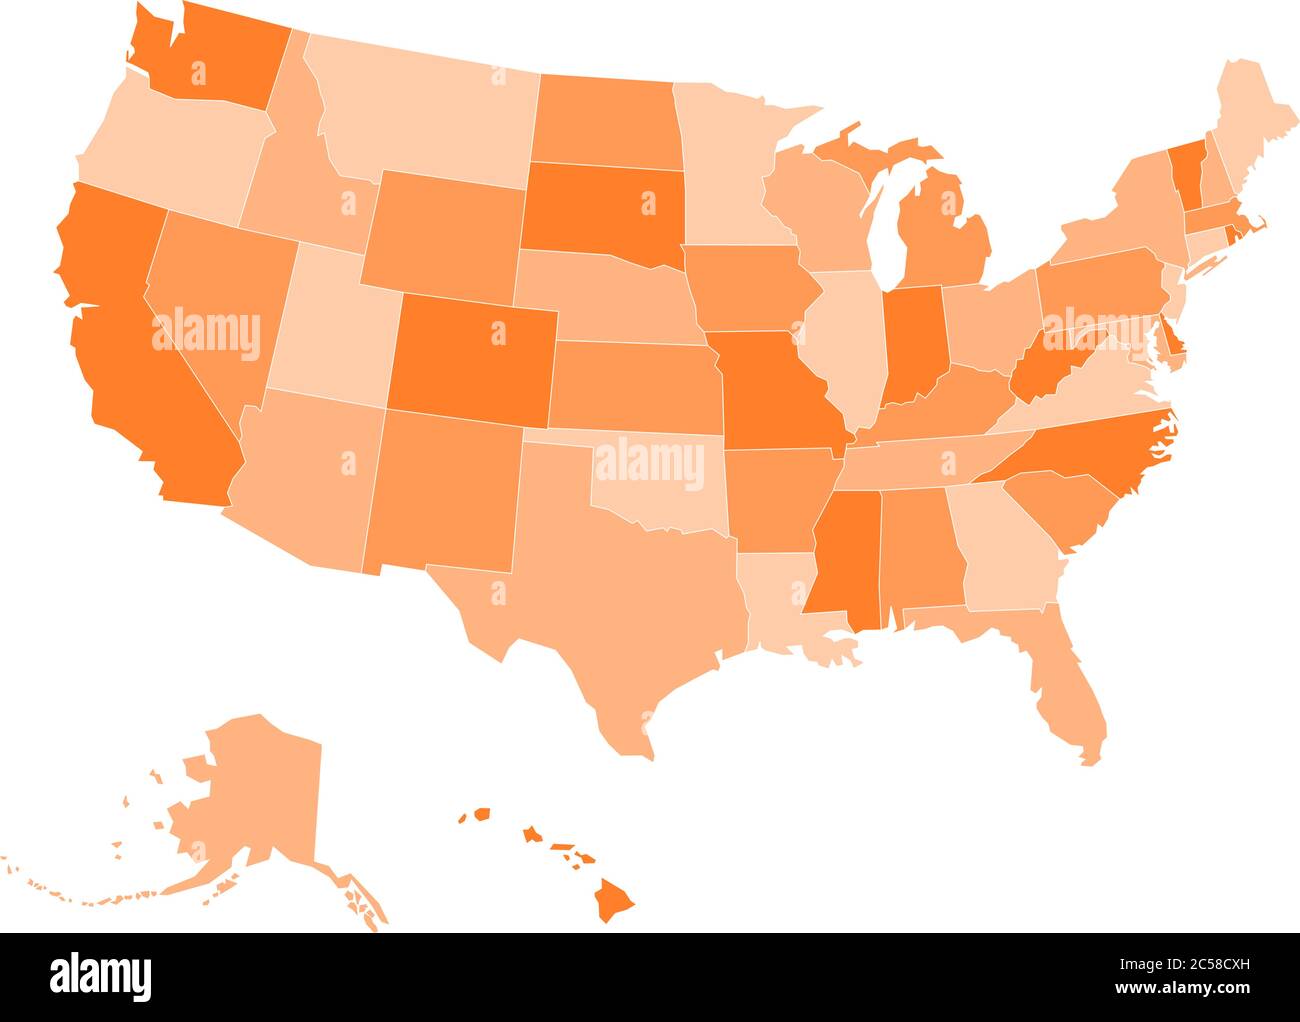 Mappa vuota degli stati Uniti d'America. Illustrazione vettoriale in tonalità arancioni su sfondo bianco. Illustrazione Vettoriale